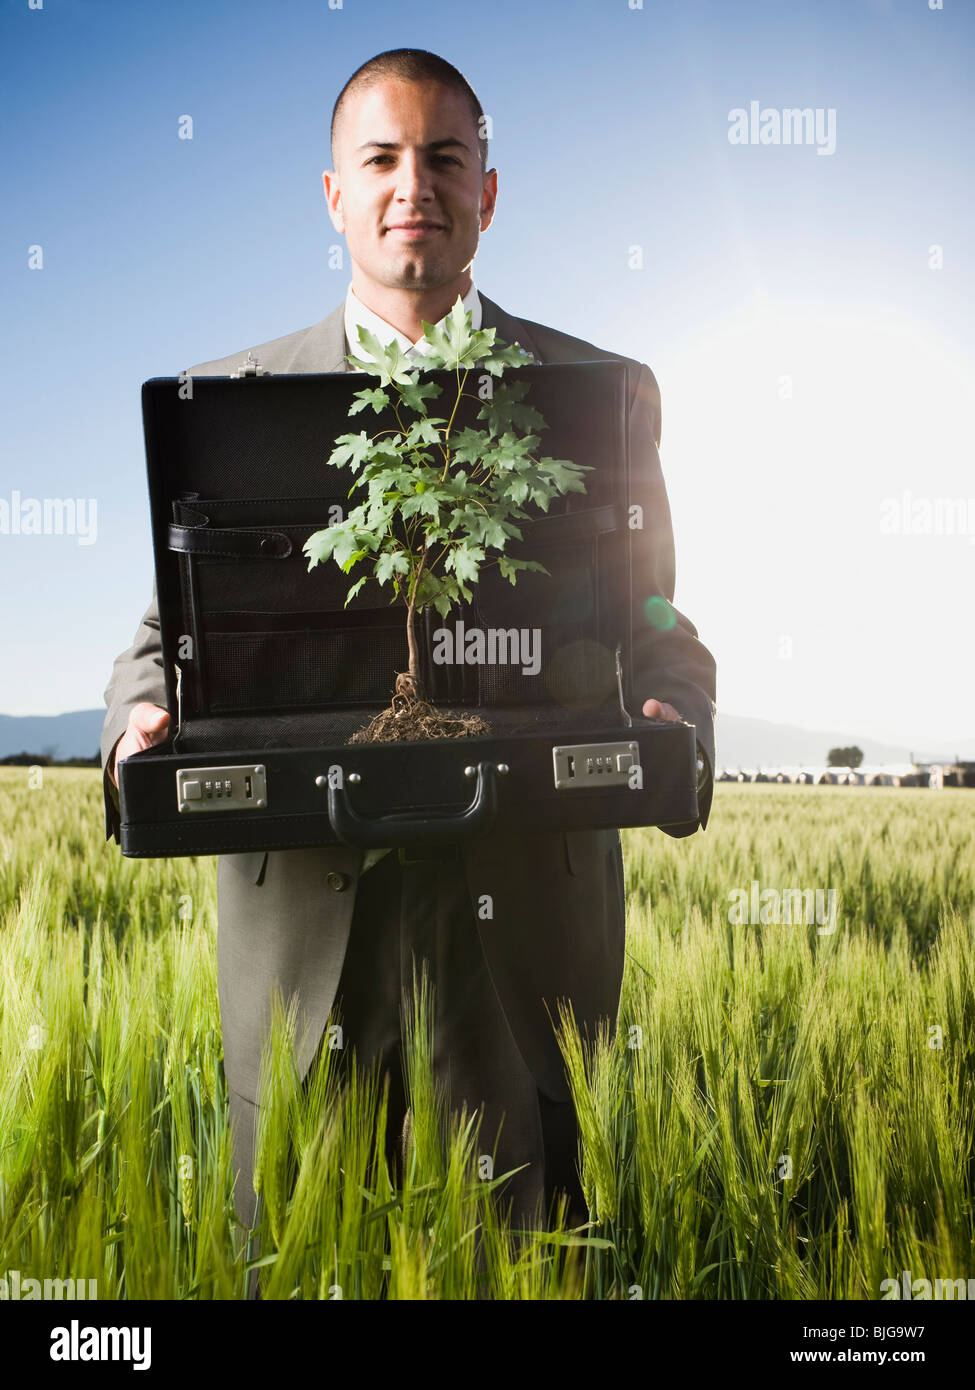 Empresario sosteniendo un maletín con un árbol en ella Foto de stock